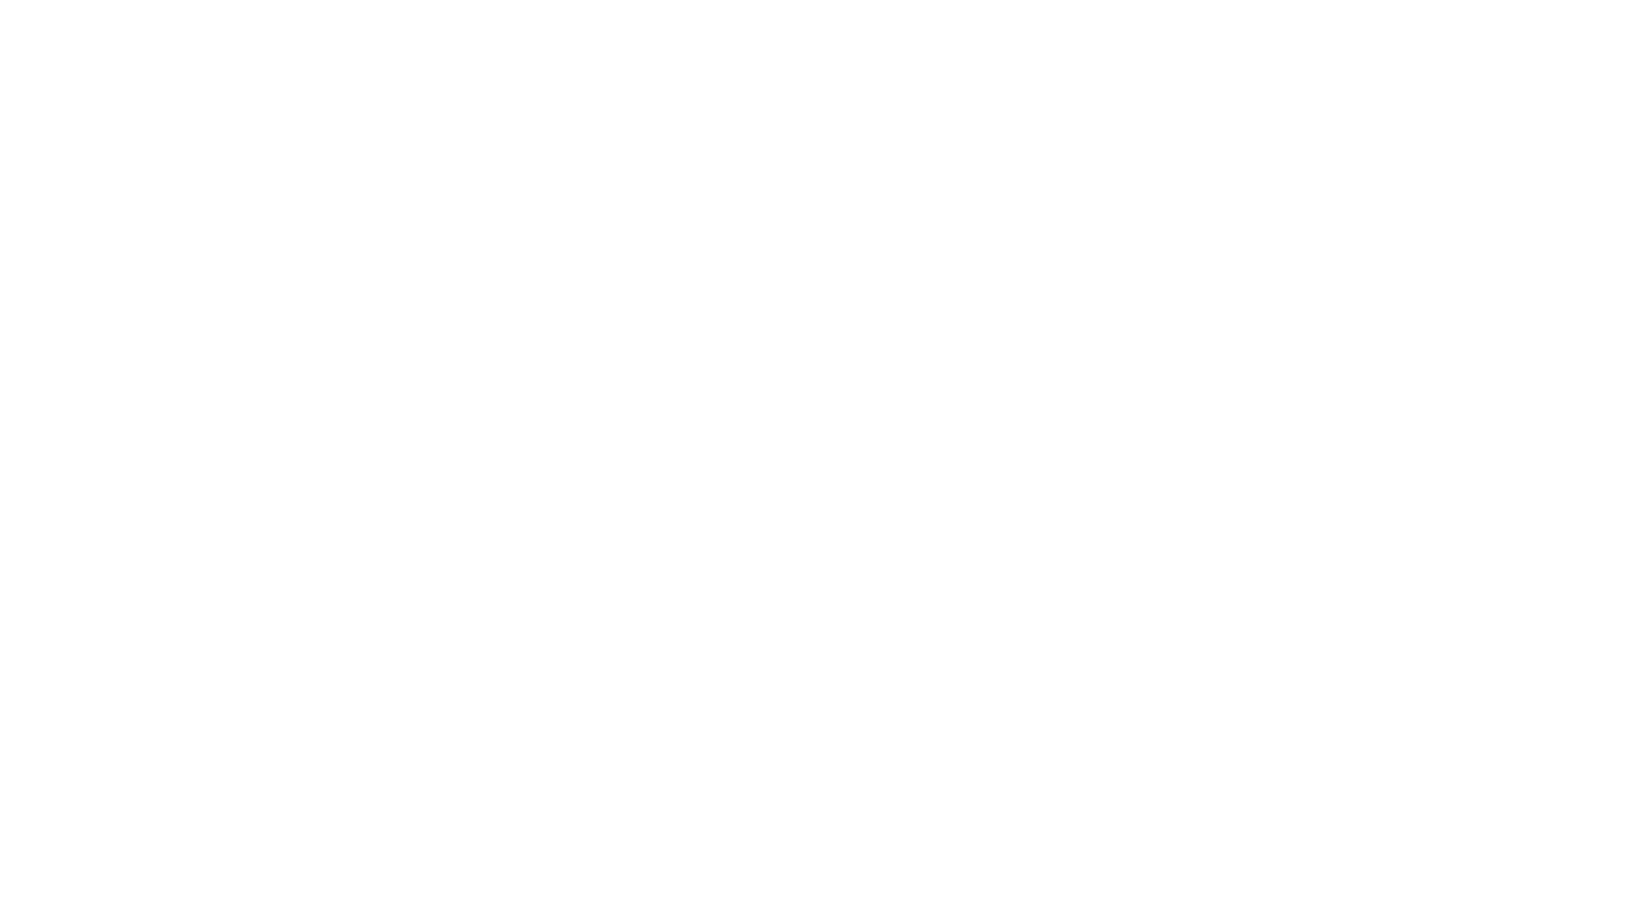 Кейс сервиса BRANDNATION - Дизайн упаковки кукурузных хлопьев. Брендинговое агентство BRANDNATION в Москве и Санкт-Петербурге. Услуги: разработка логотипа и фирменного стиля, дизайн упаковки, брендбук, ребрендинг, разработка сайта.